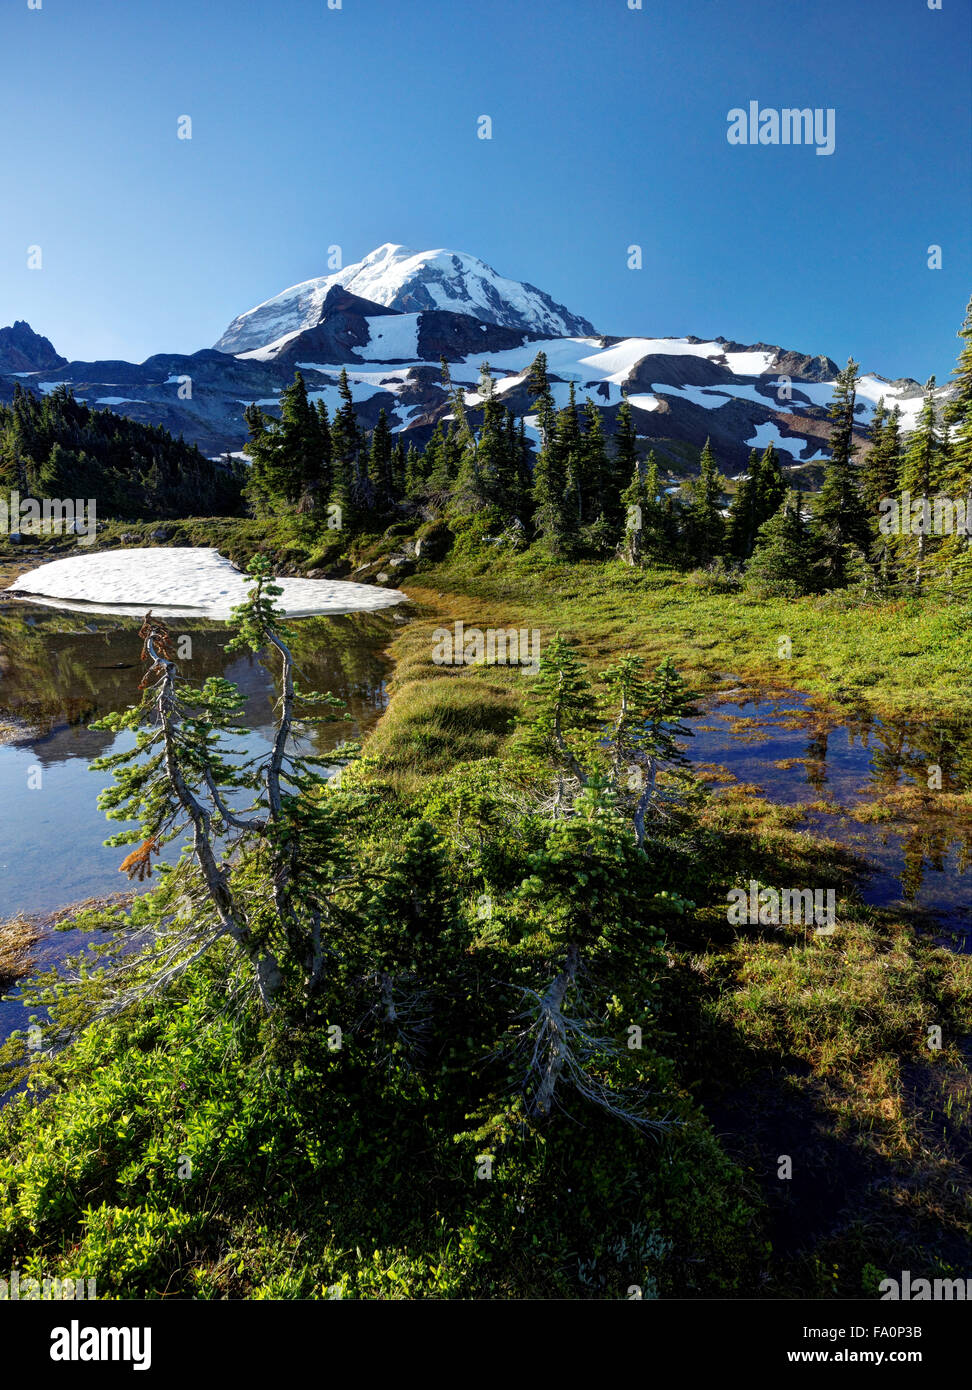 Subalpine meadow with ponds, Spray Park, Mount Rainier National Park, Washington State, USA Stock Photo